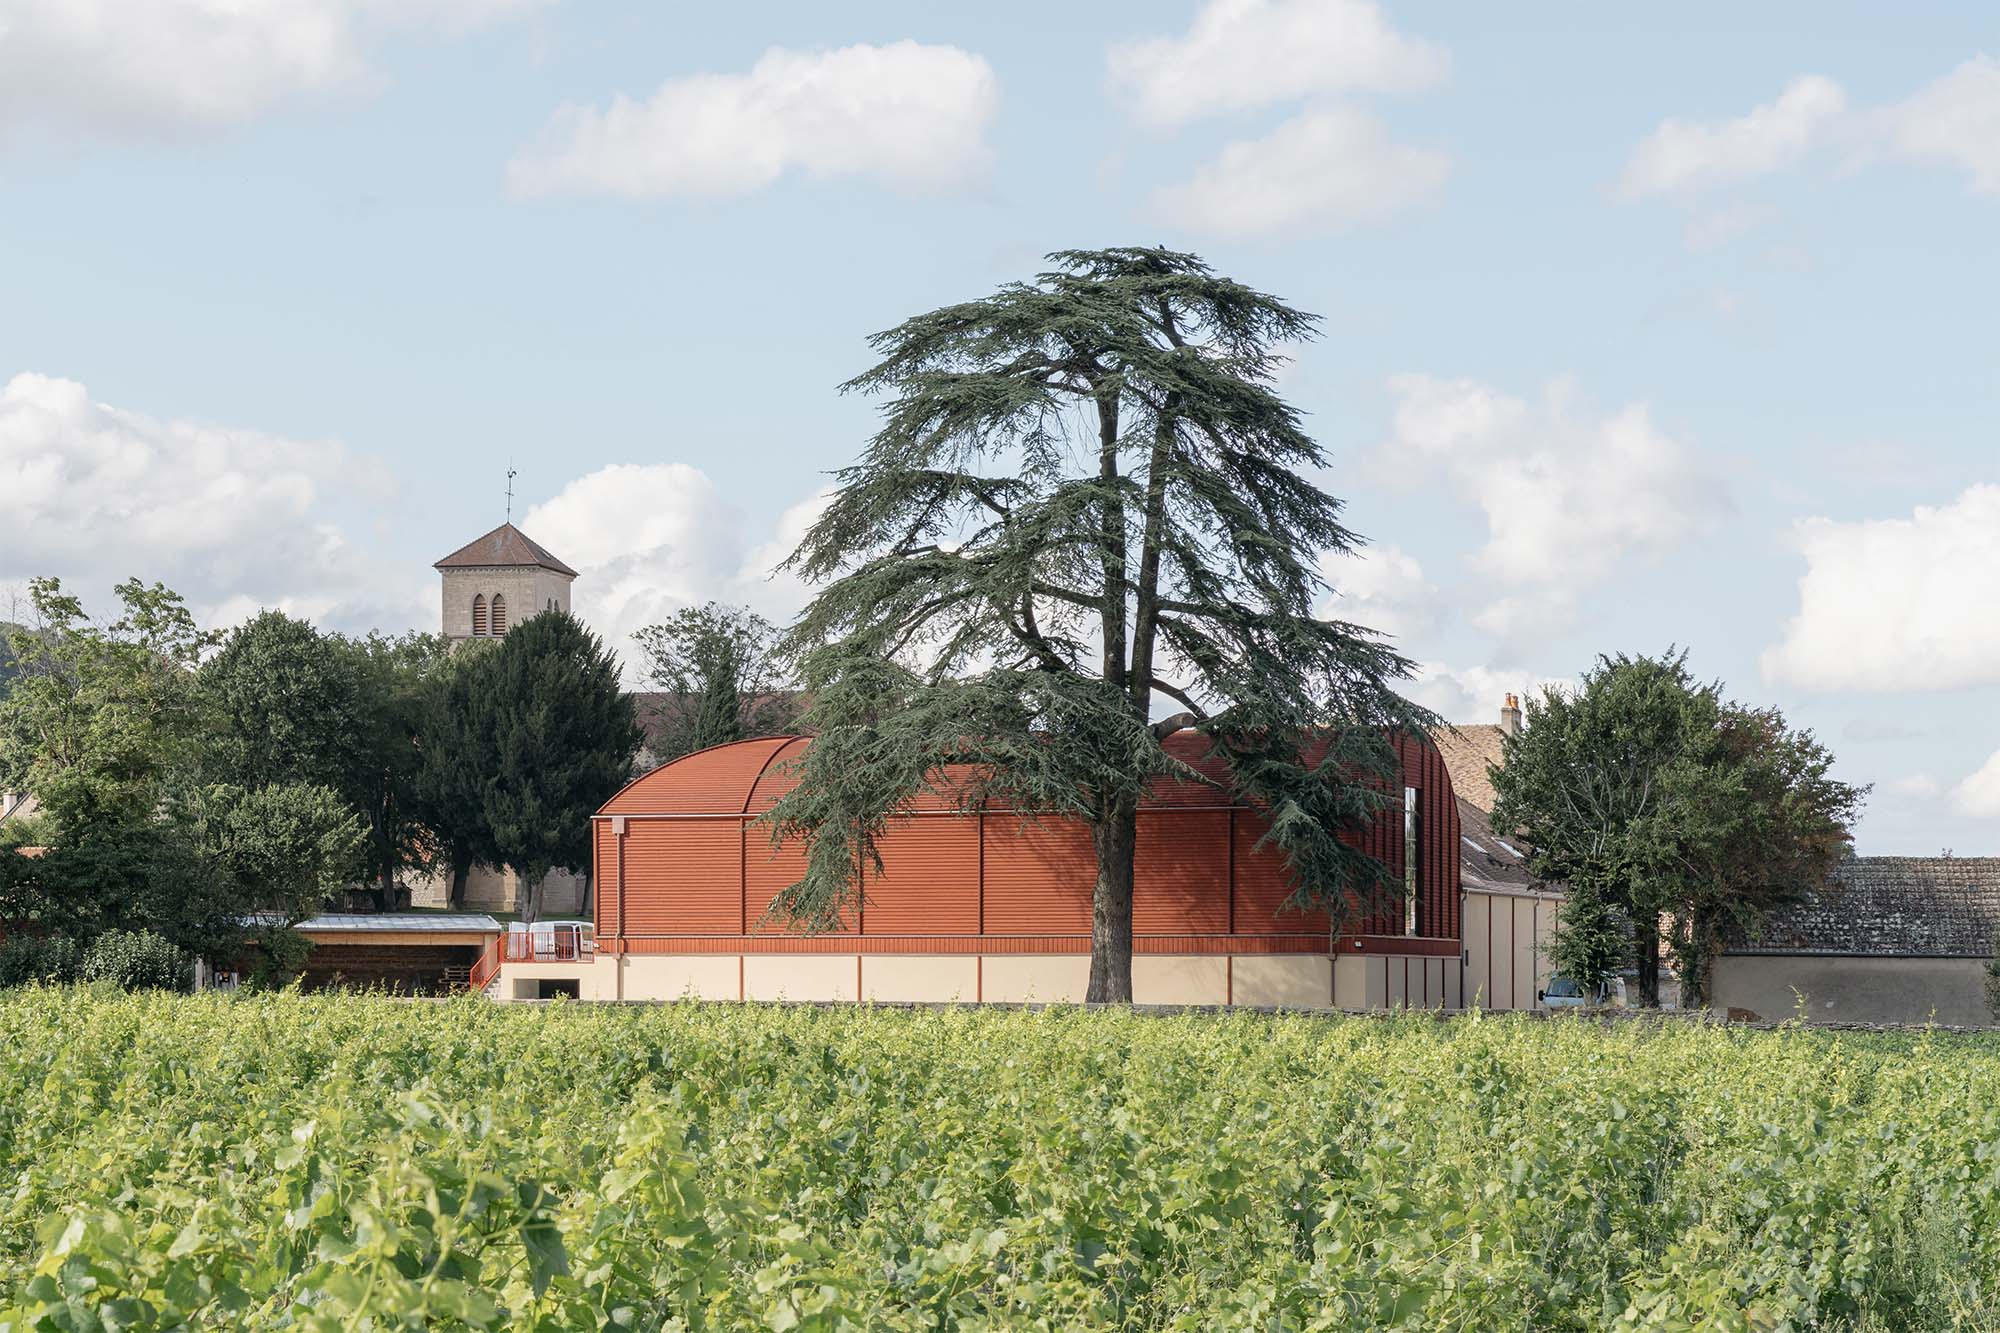 Vue de la cuverie depuis les vignes en face. Le grand cèdre devant la cuverie, constrate avec le bardage rouge des façades.